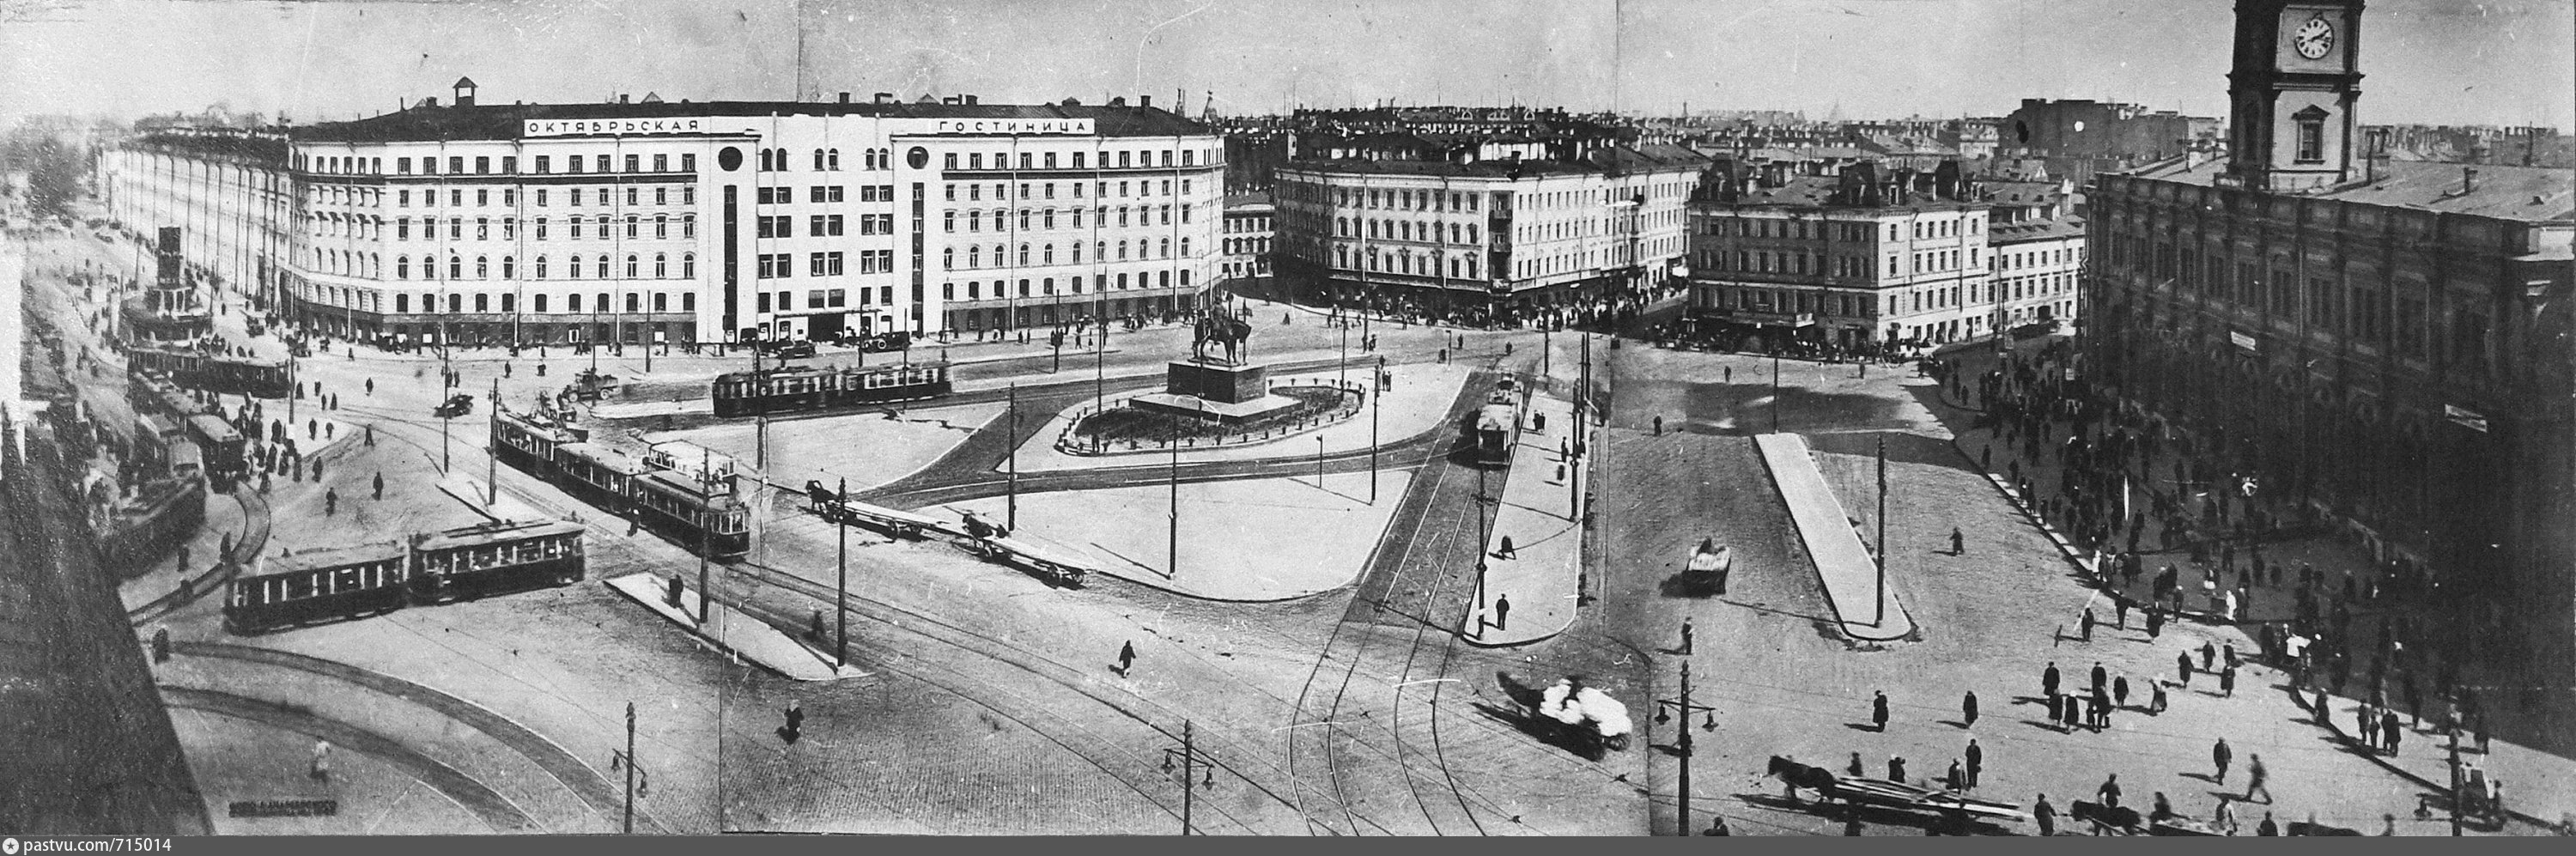 Метро площадь восстания санкт петербург фото